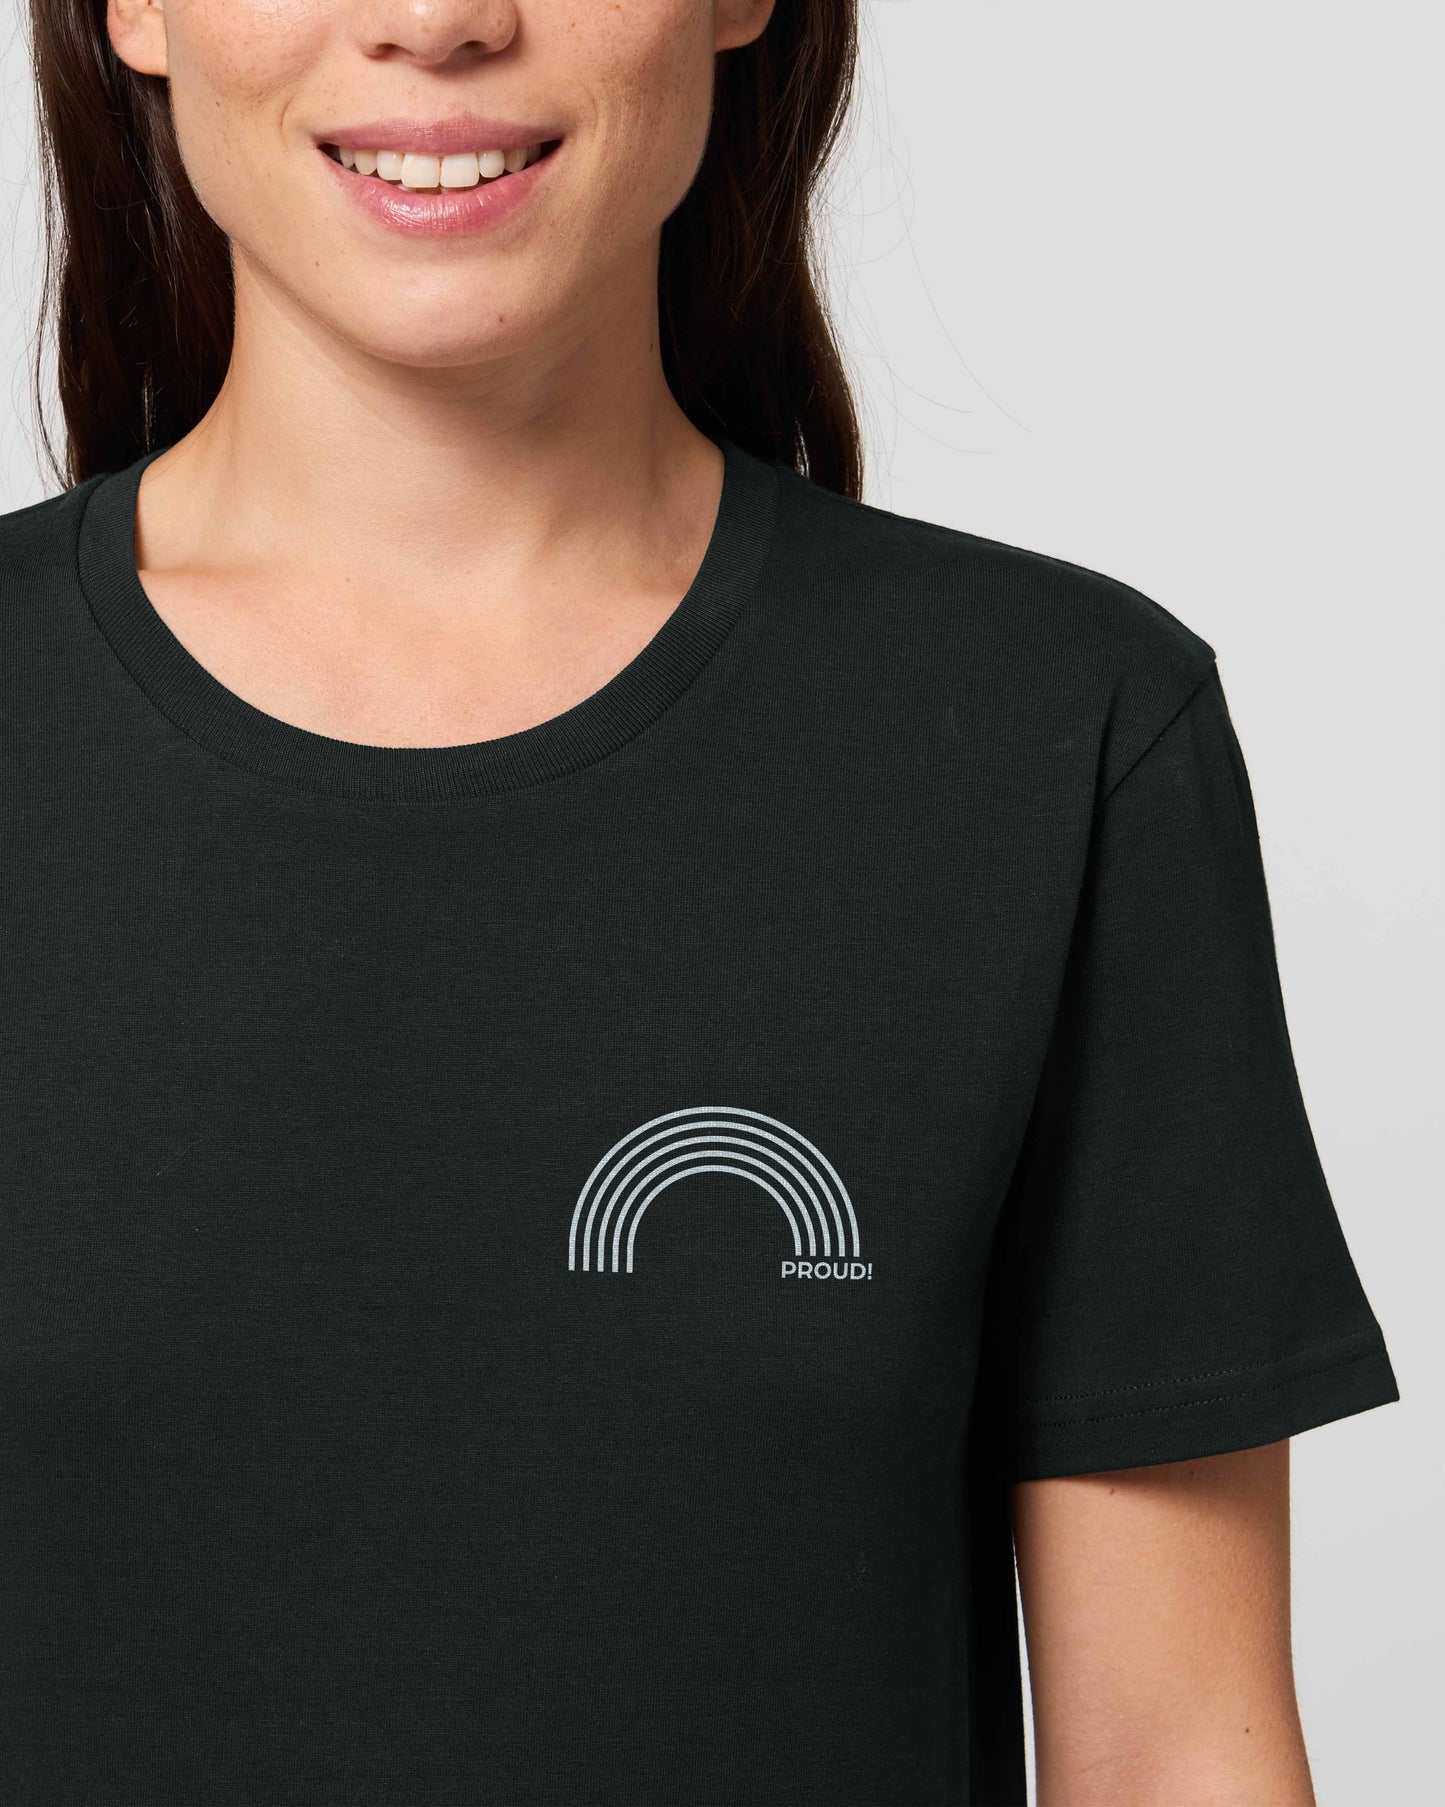 EINHORST® unisex Organic Shirt in Schwarz mit dem Motiv "proud Regenbogen" in der Kombination weißer Regenbogen mit weißer Schrift, Bild von weiblicher Person mit Shirt